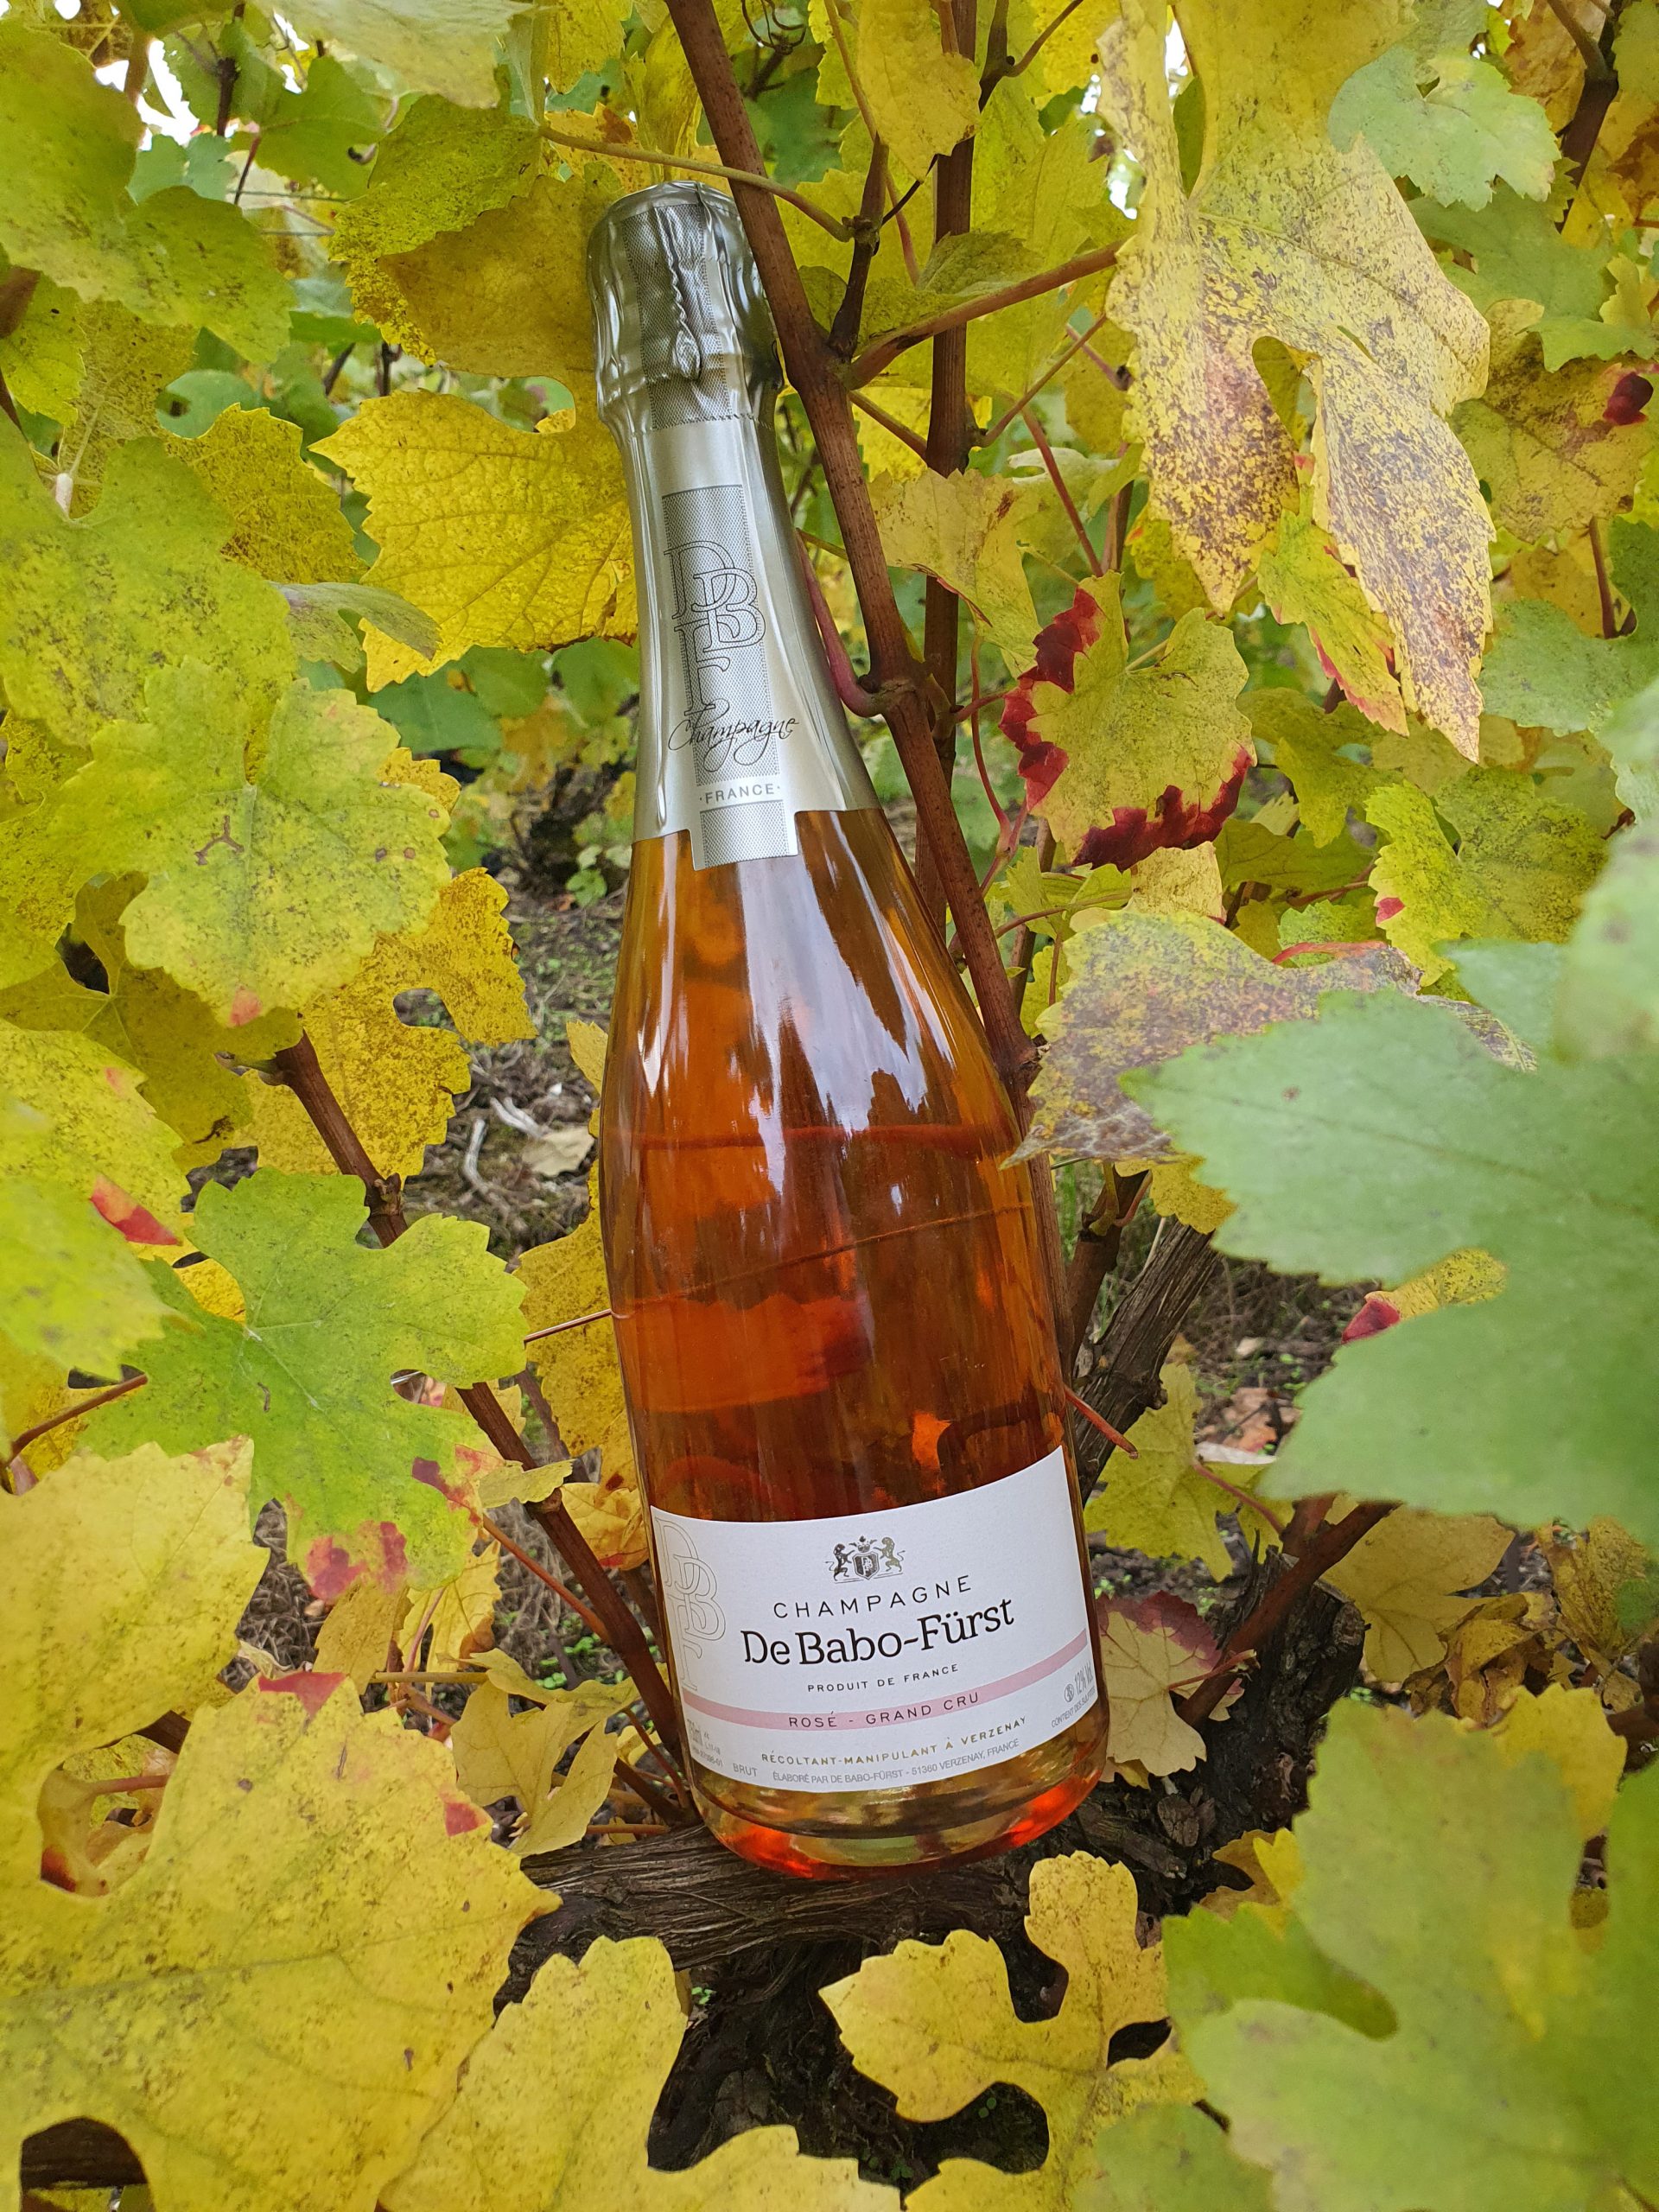 Vente directe producteur de champagne Reims : Cuvée Rosé Grand Cru  Cuvée Brut + 8% de Coteau Champenois